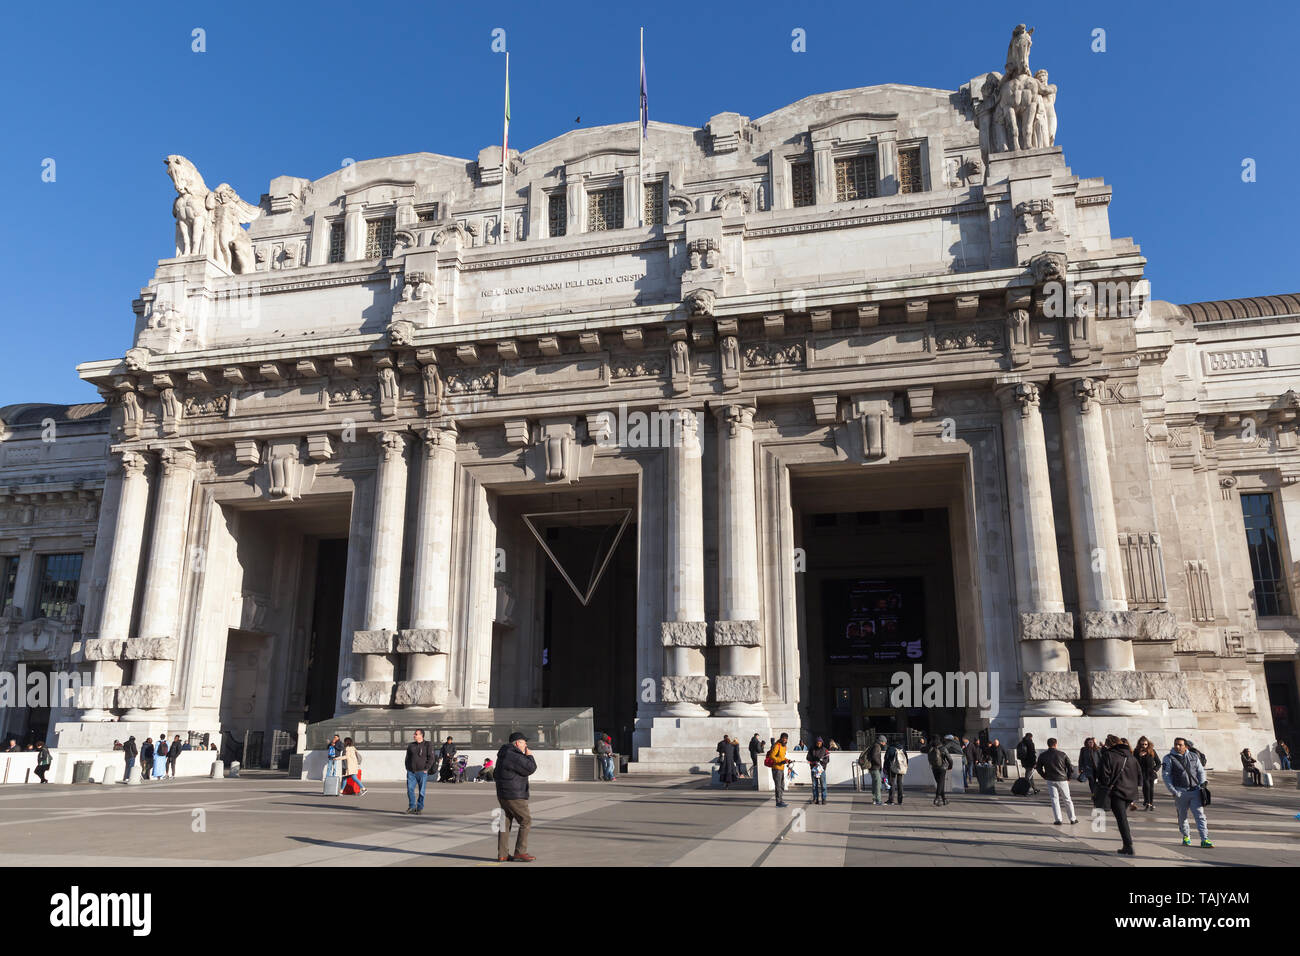 Milan, Italie - 19 janvier 2018, Milano Centrale : c'est la principale gare ferroviaire de la ville de Milan, et la plus grande gare d'Europe Banque D'Images